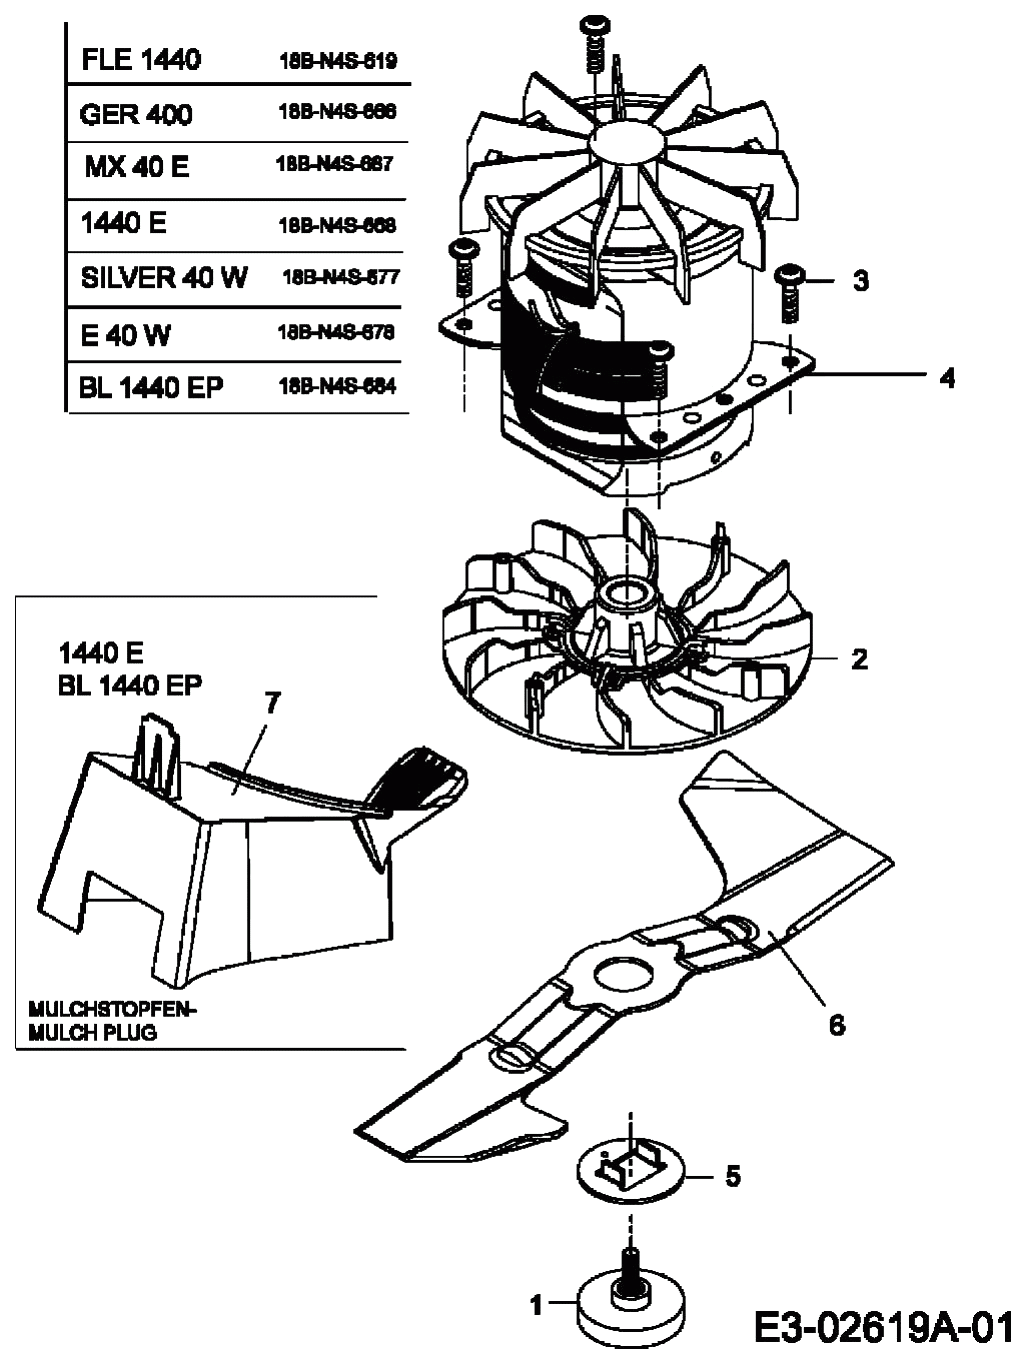 MTD Артикул 18B-N4S-678 (год выпуска 2006). Электромотор, ножи, мульчирование